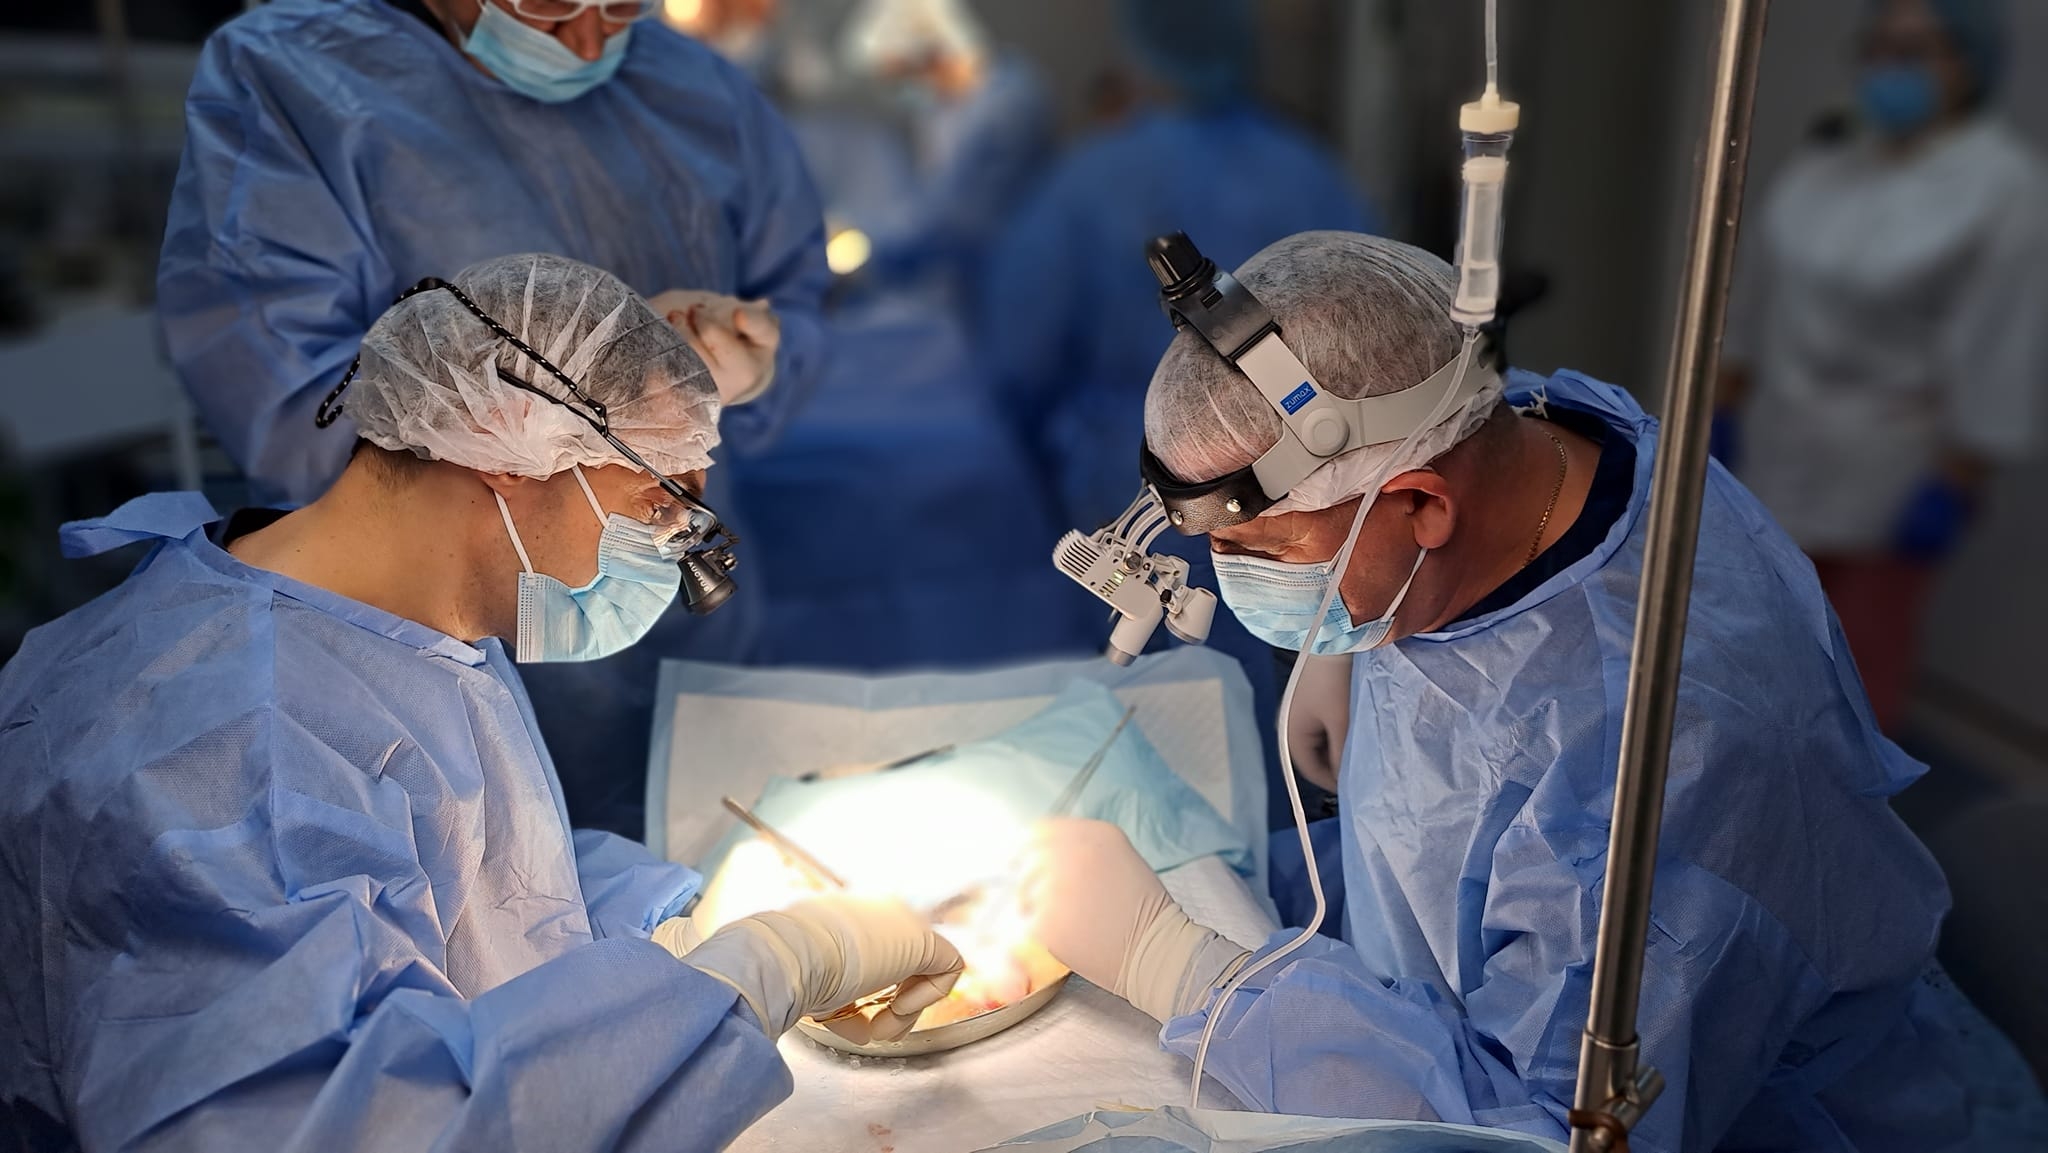 Вінницькі лікарі у співпраці з хмельницькими колегами успішно пересадили нирку